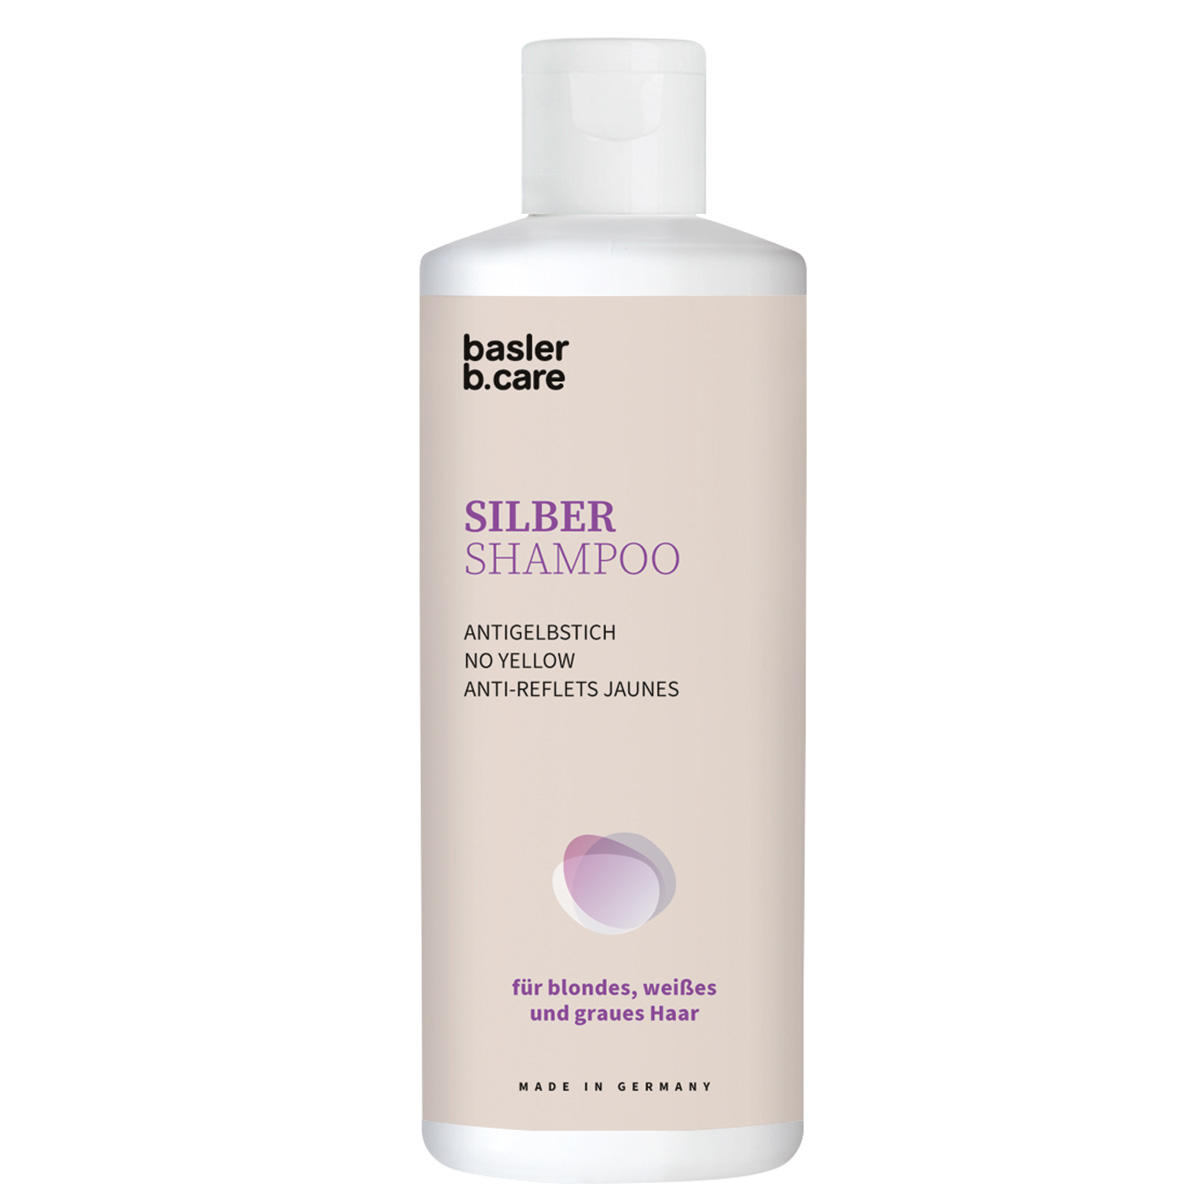 Basler Silber Shampoo 200 ml - 1